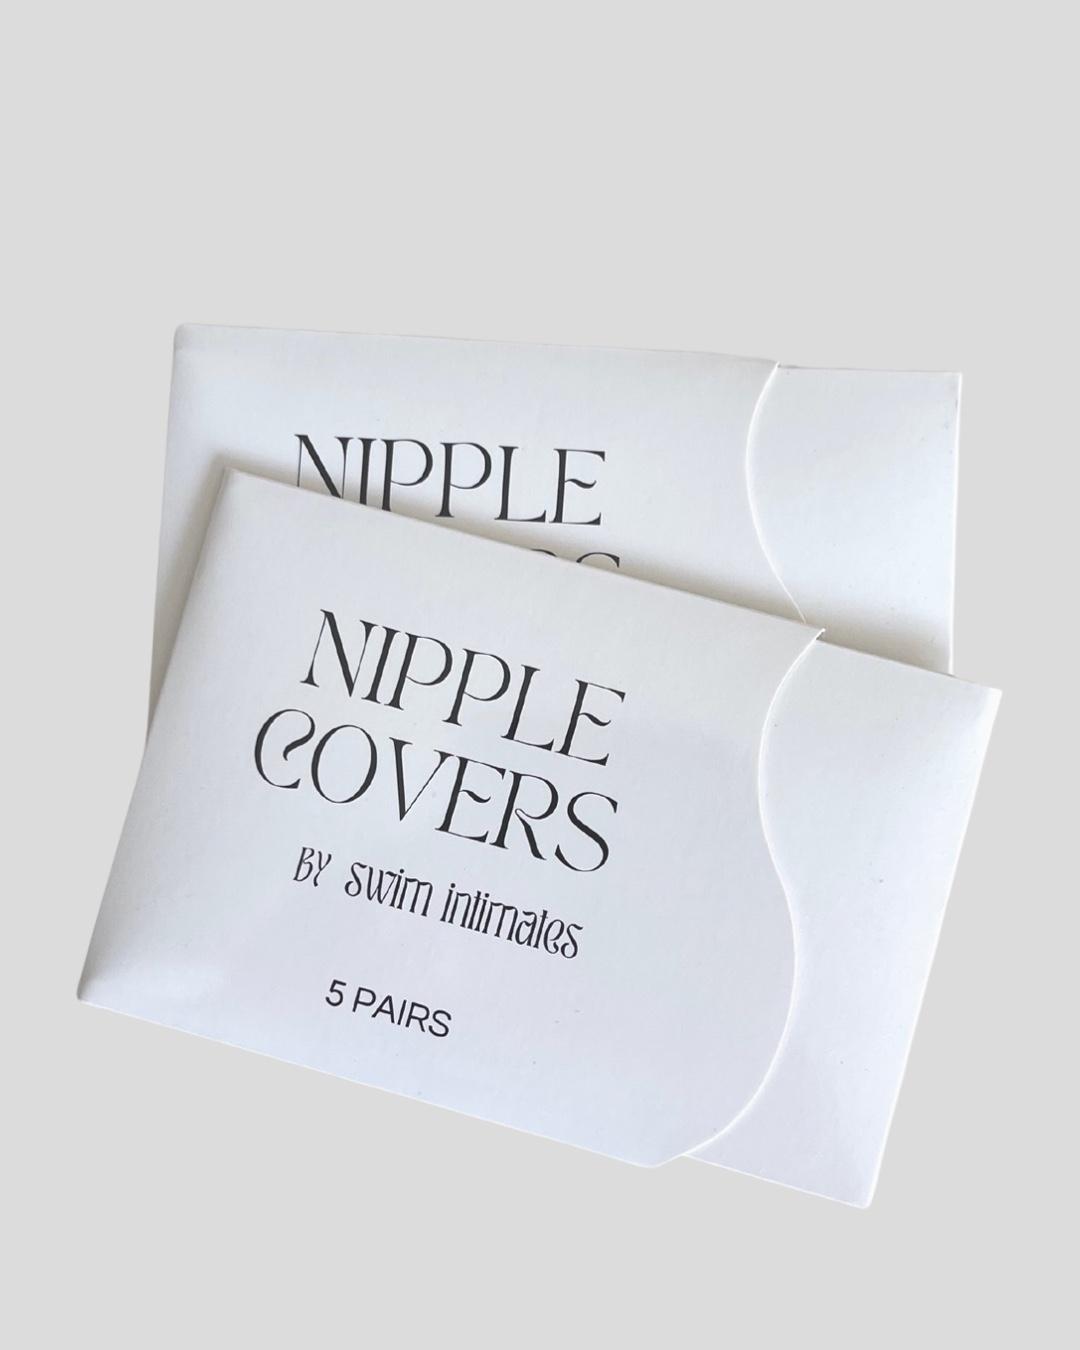 Nipple-covers-onrotate